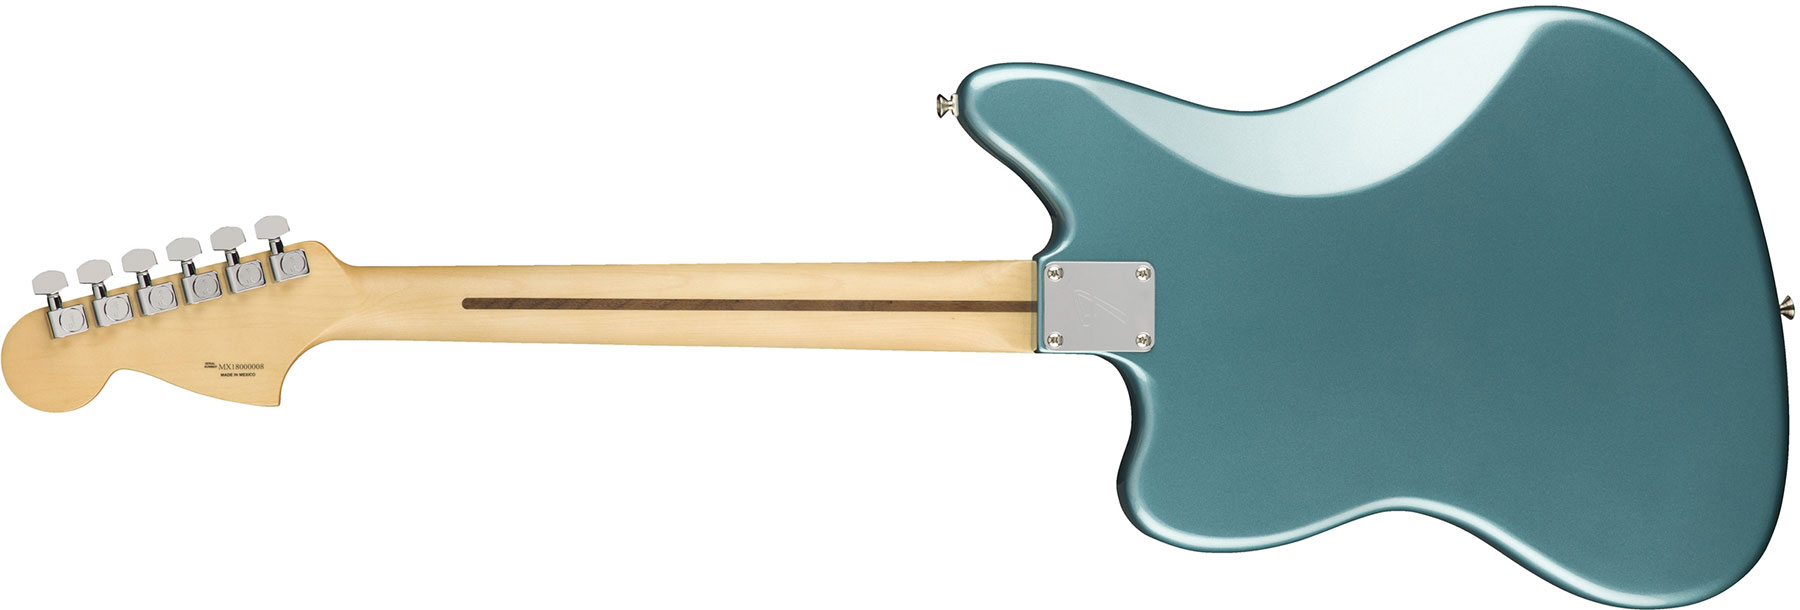 Fender Jaguar Player Mex Hs Trem Pf - Tidepool - Guitare Électrique RÉtro Rock - Variation 1